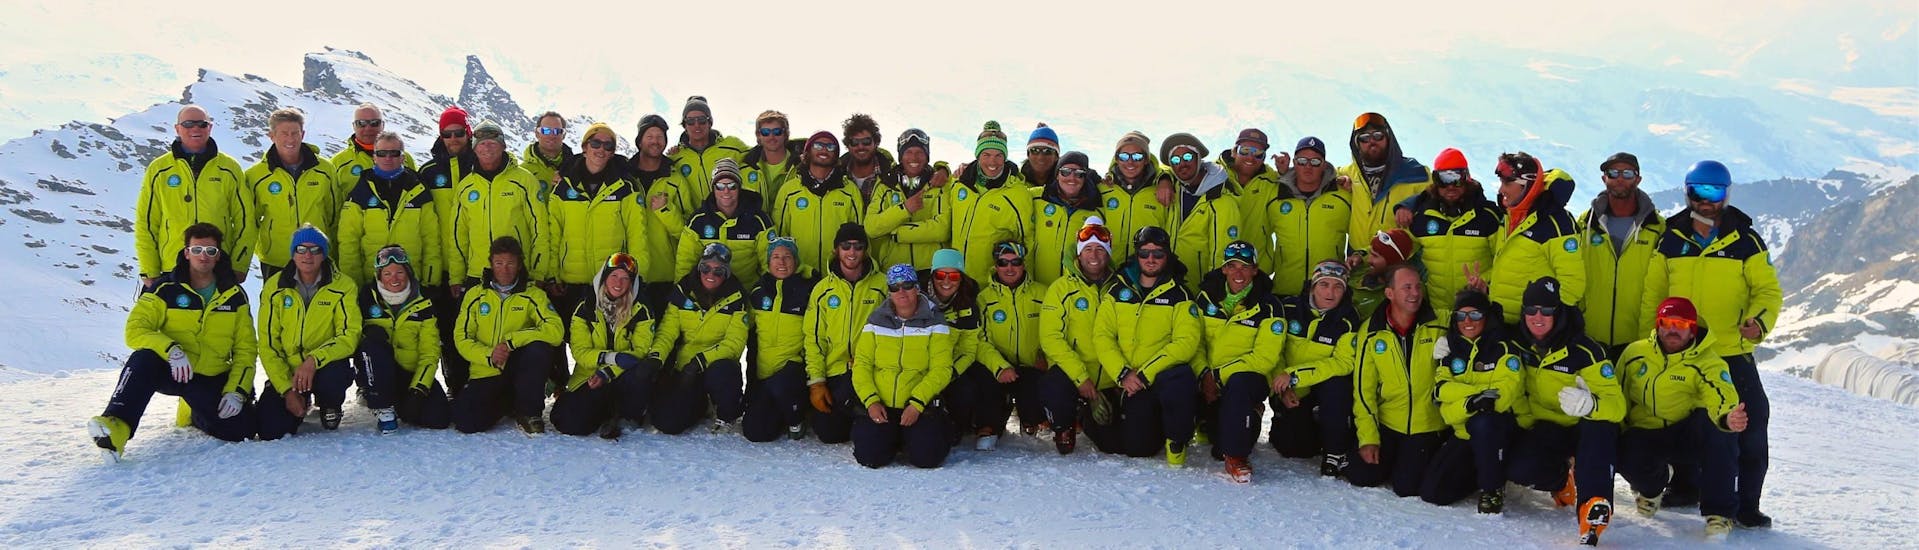 Photo des moniteurs de l'école de ski Prosneige Alpe d'Huez.